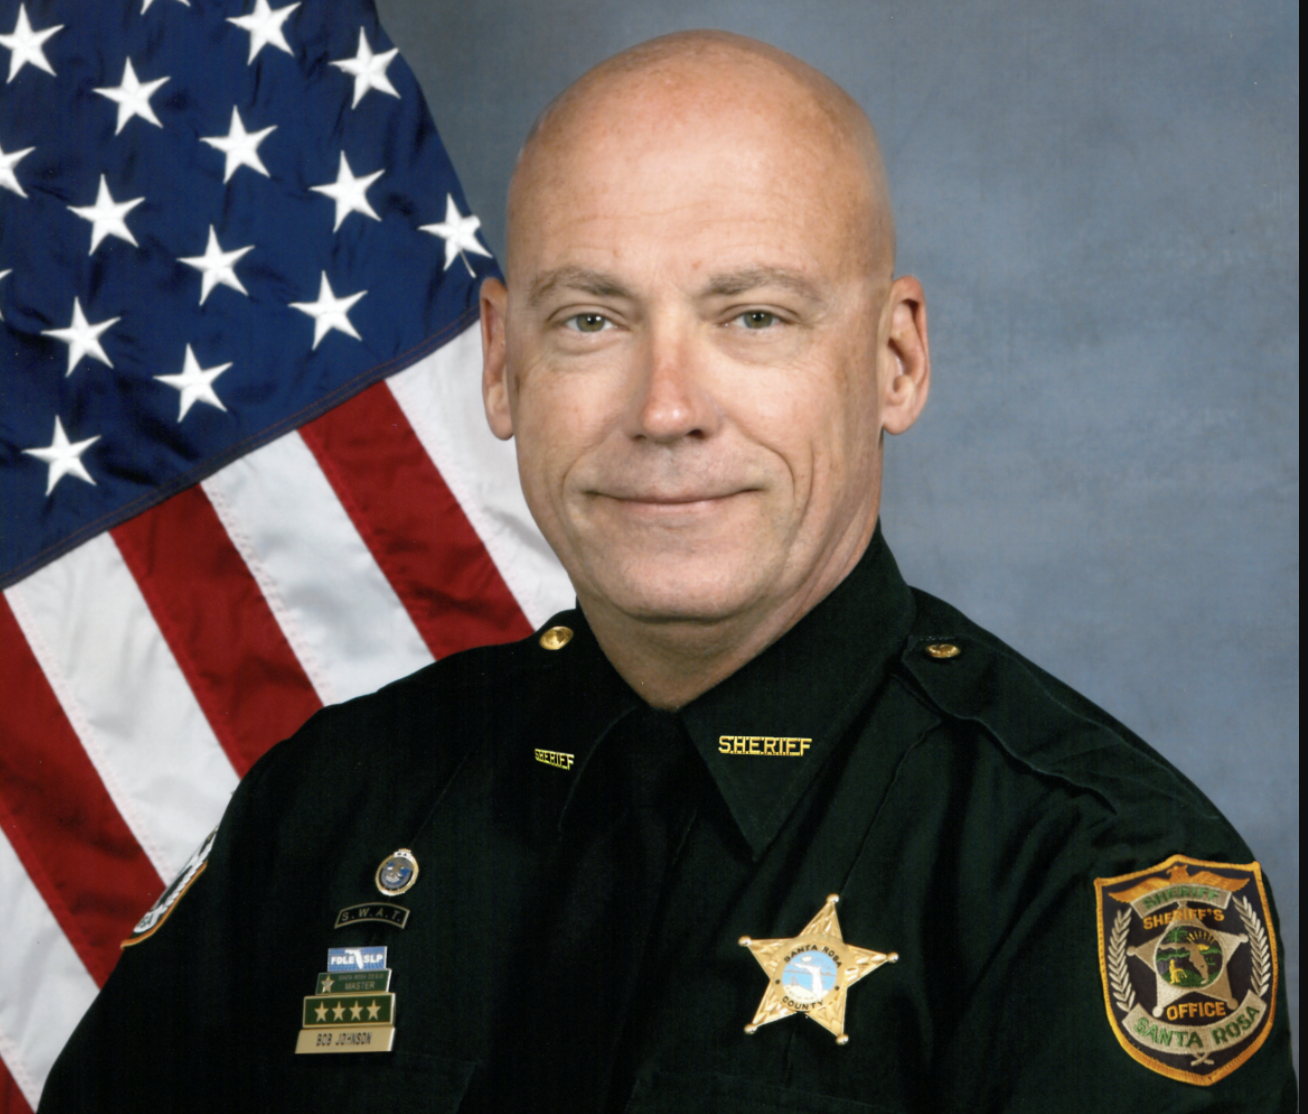 Sheriff Bob Johnson